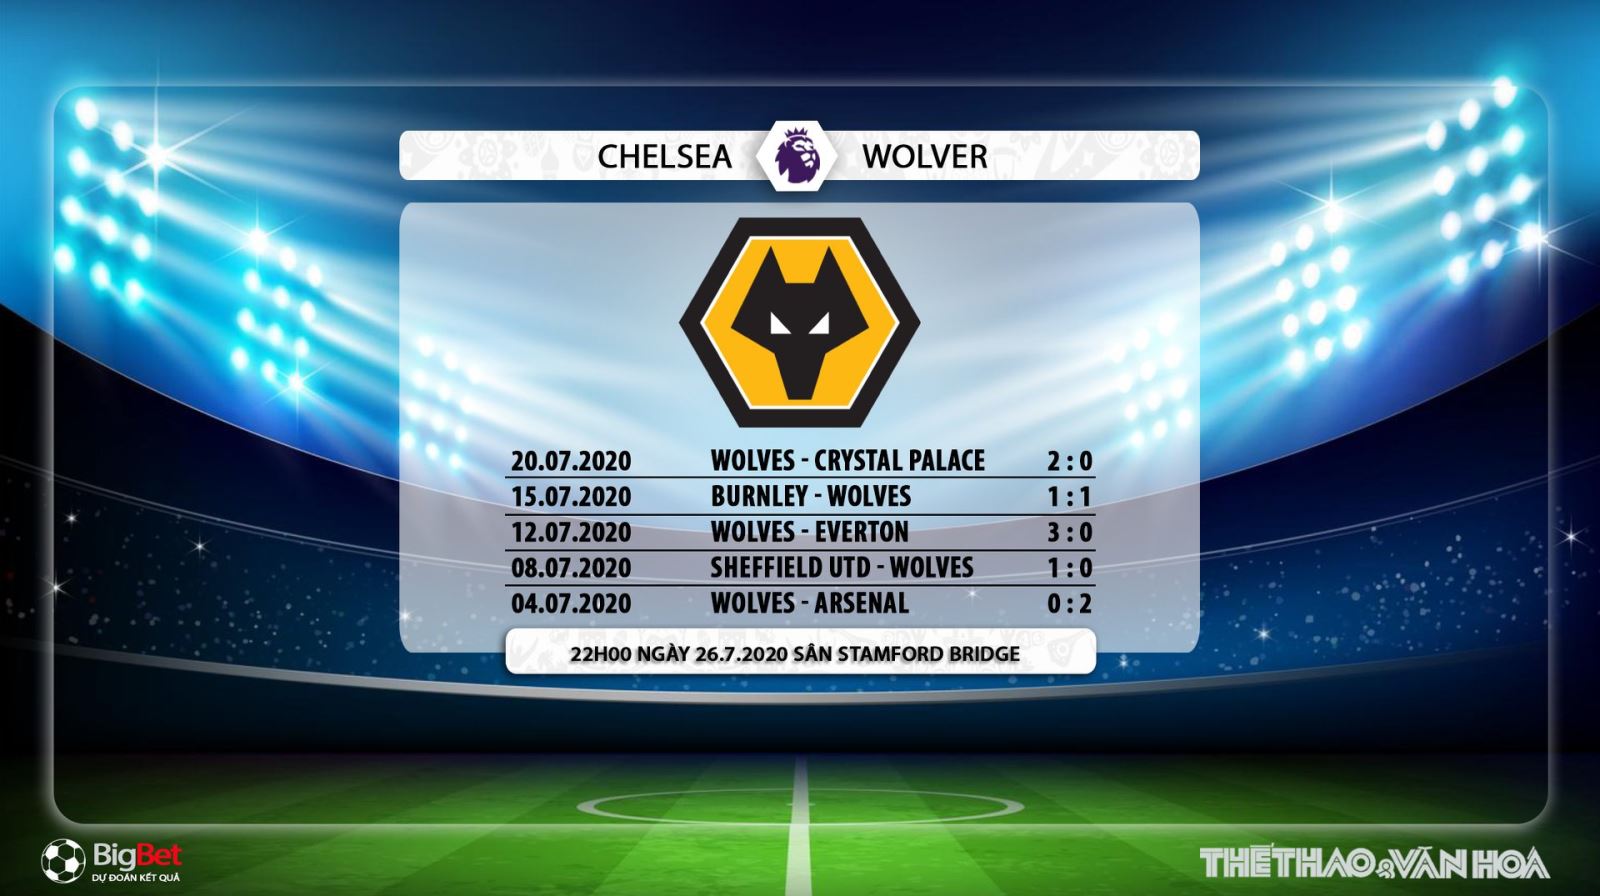 Chelsea vs Wolves, Wolves, Chelsea, soi kèo bóng đá, kèo Chelsea vs Wolves, soi kèo bóng đá Chelsea vs Wolves, trực tiếp Chelsea vs Wolves